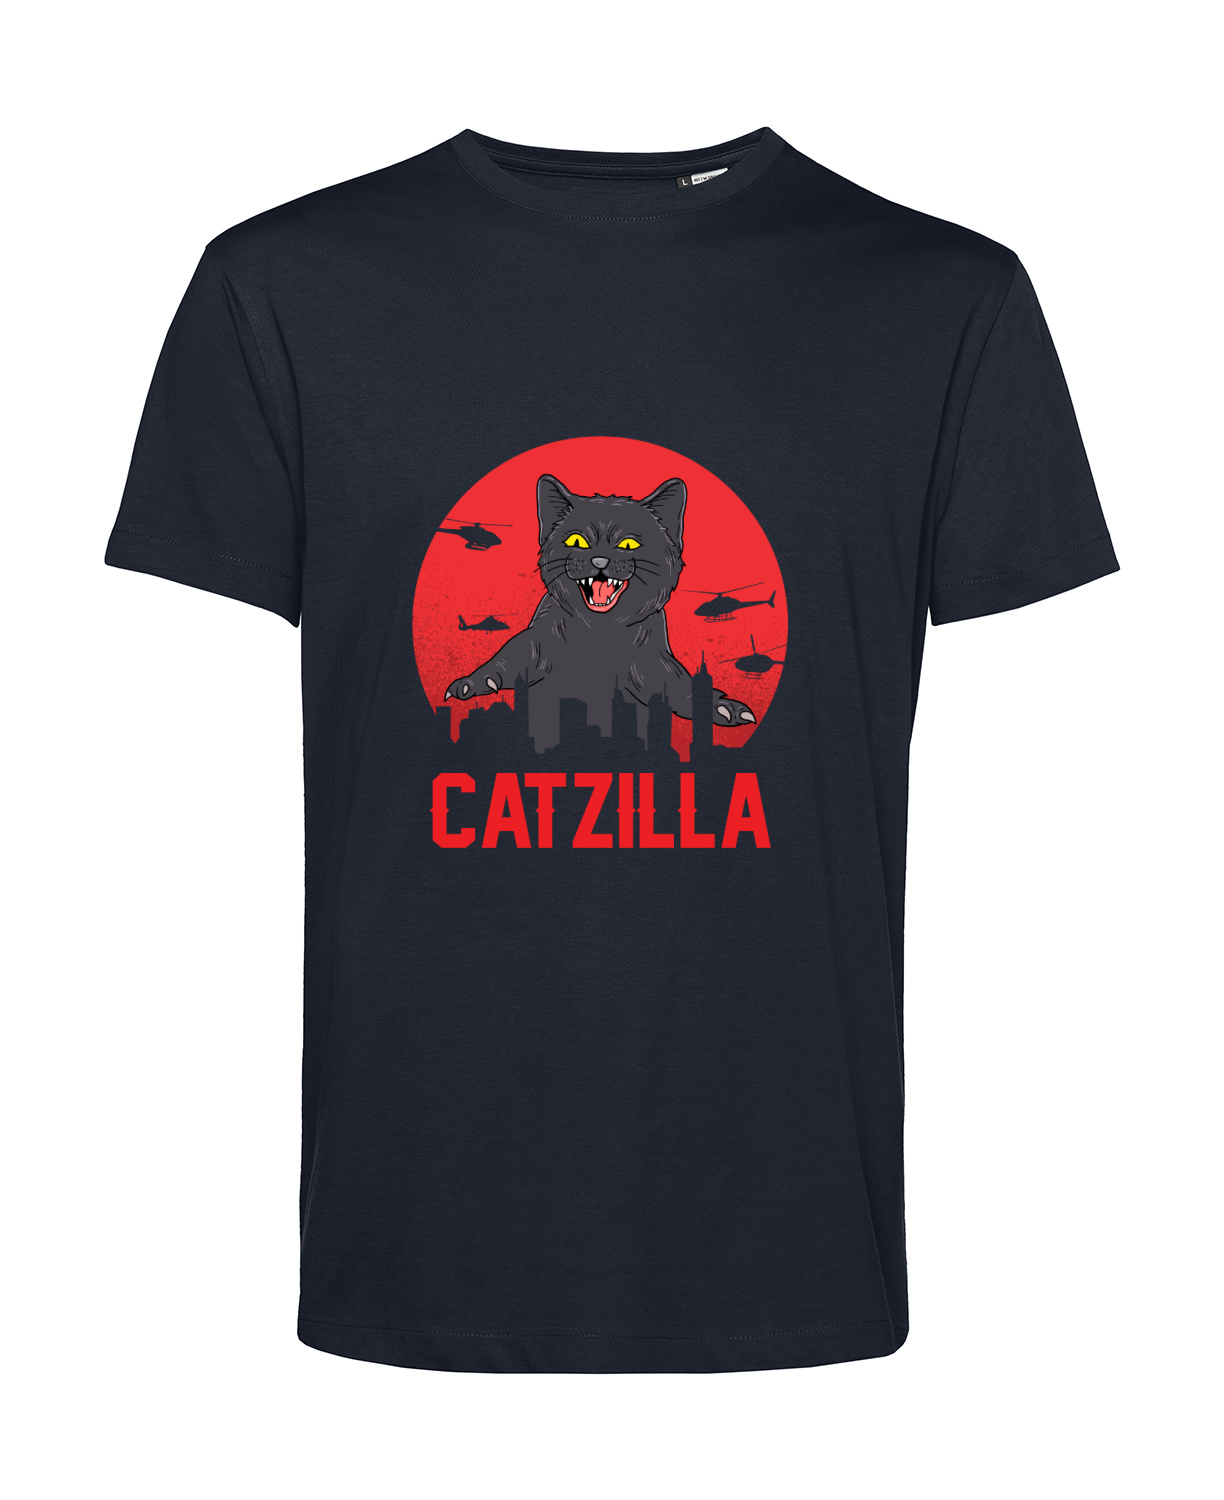 Nachhaltiges T-Shirt Herren Katzen - Catzilla